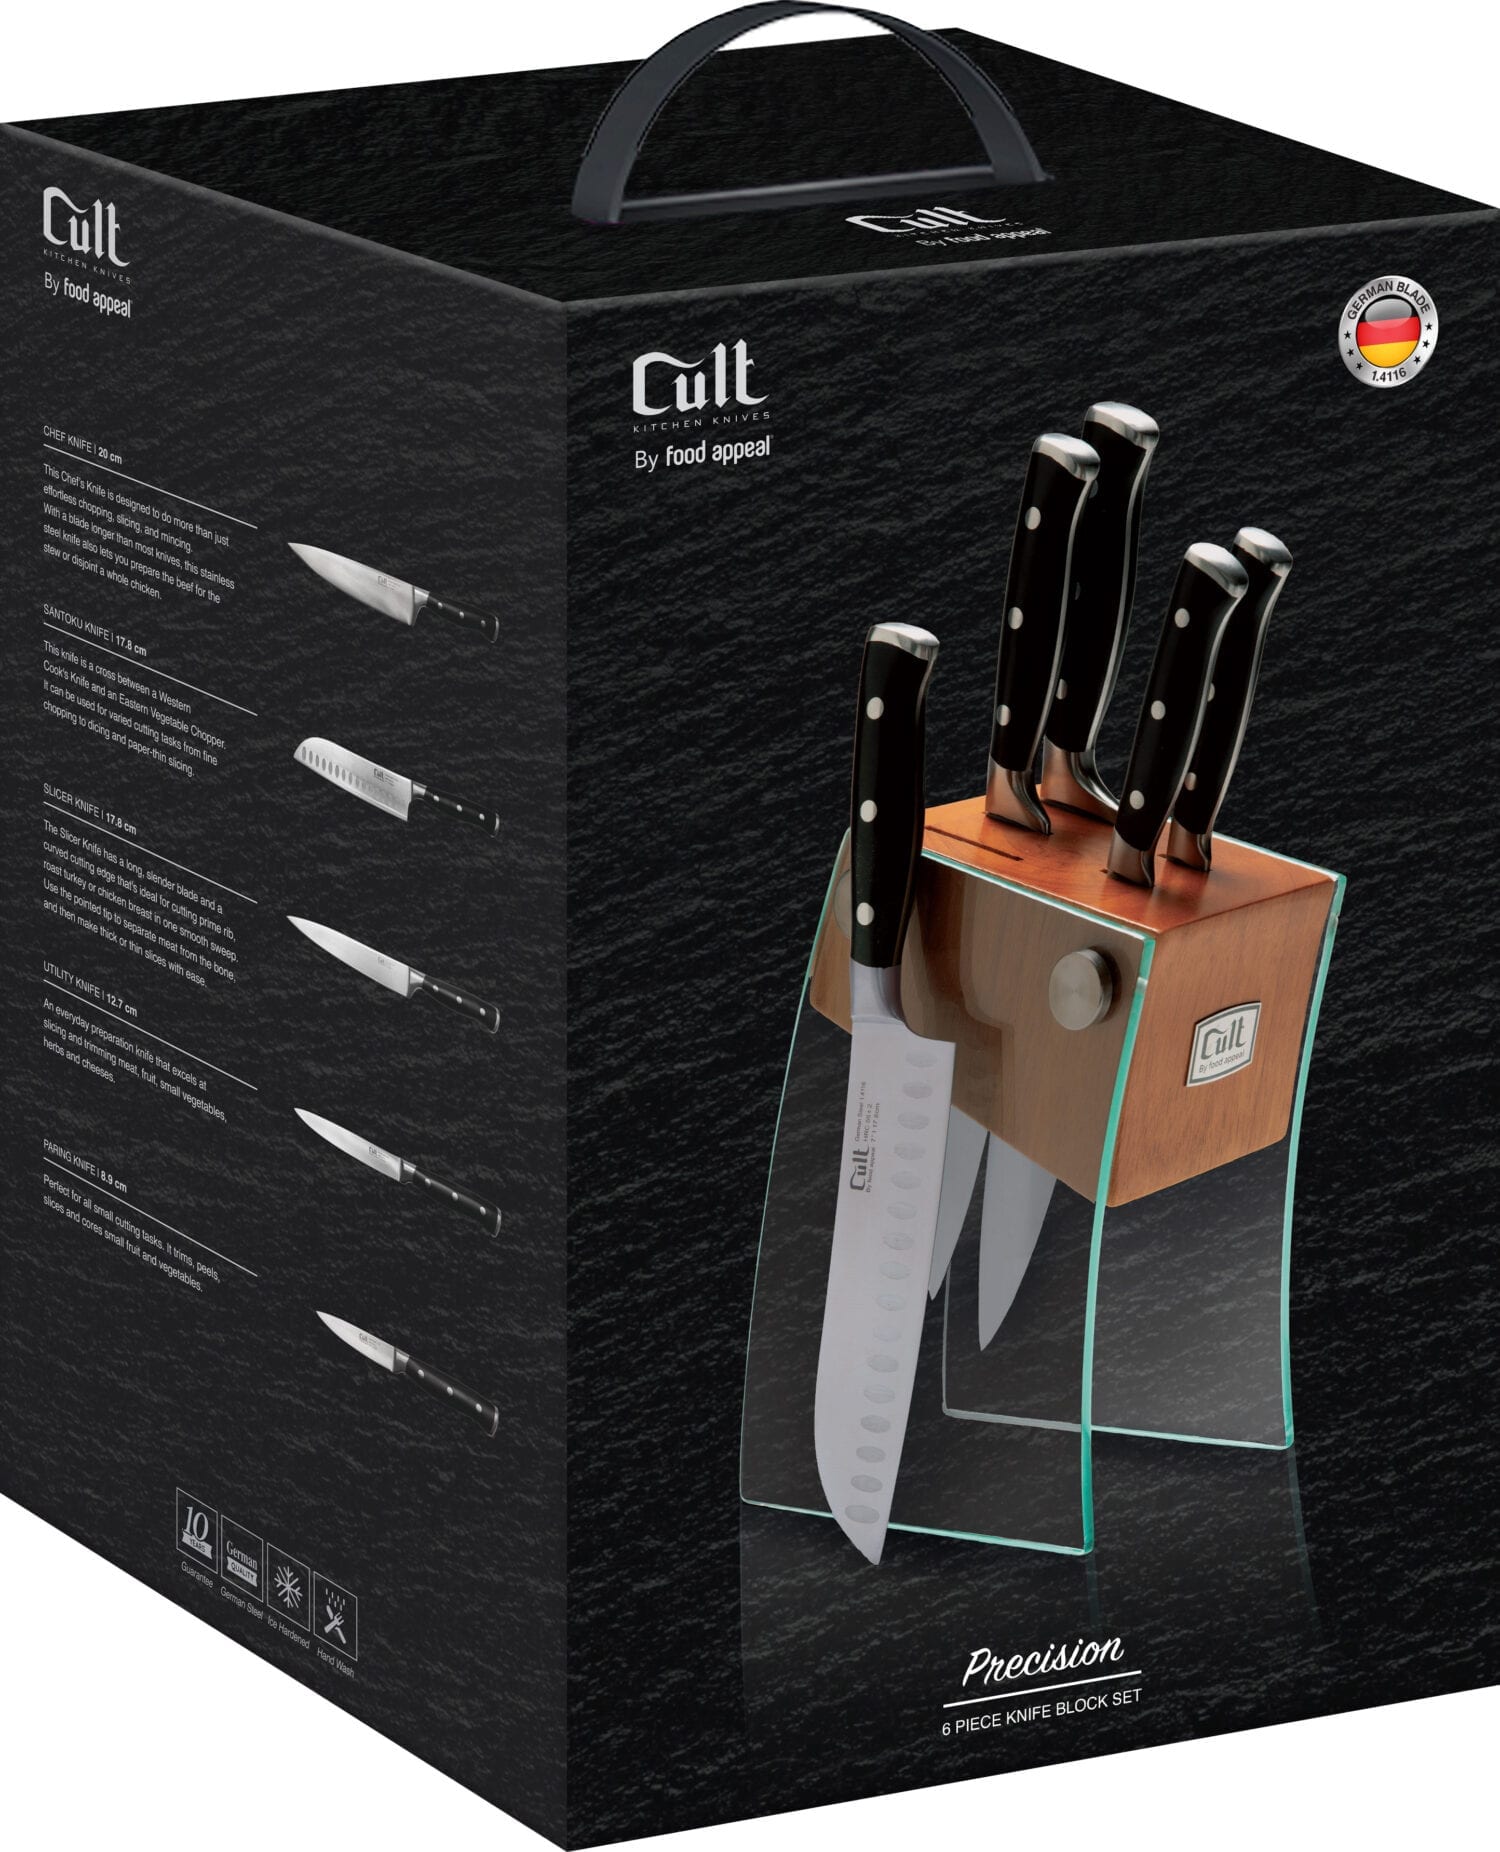 בלוק סכינים 6 חלקים הכולל 5 סכינים + מעמד זכוכית Food Appeal Cult Precision פוד אפיל